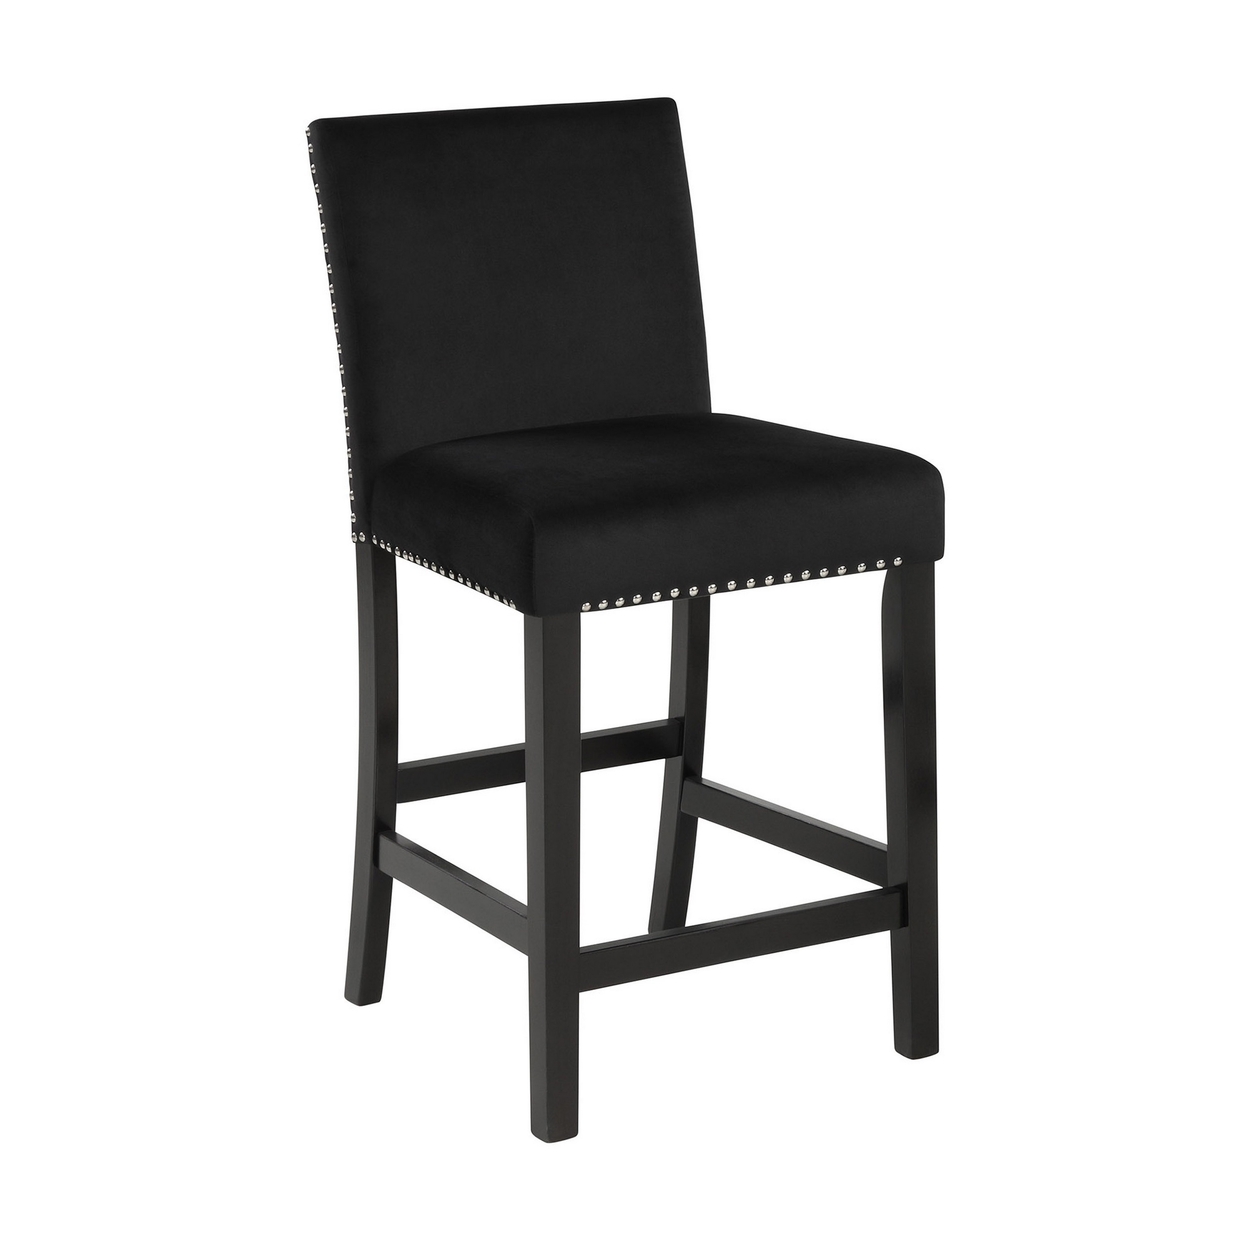 Jordan 24 Inch Counter Side Chair Set Of 2, Velvet Upholstery, Wood, Black -Saltoro Sherpi